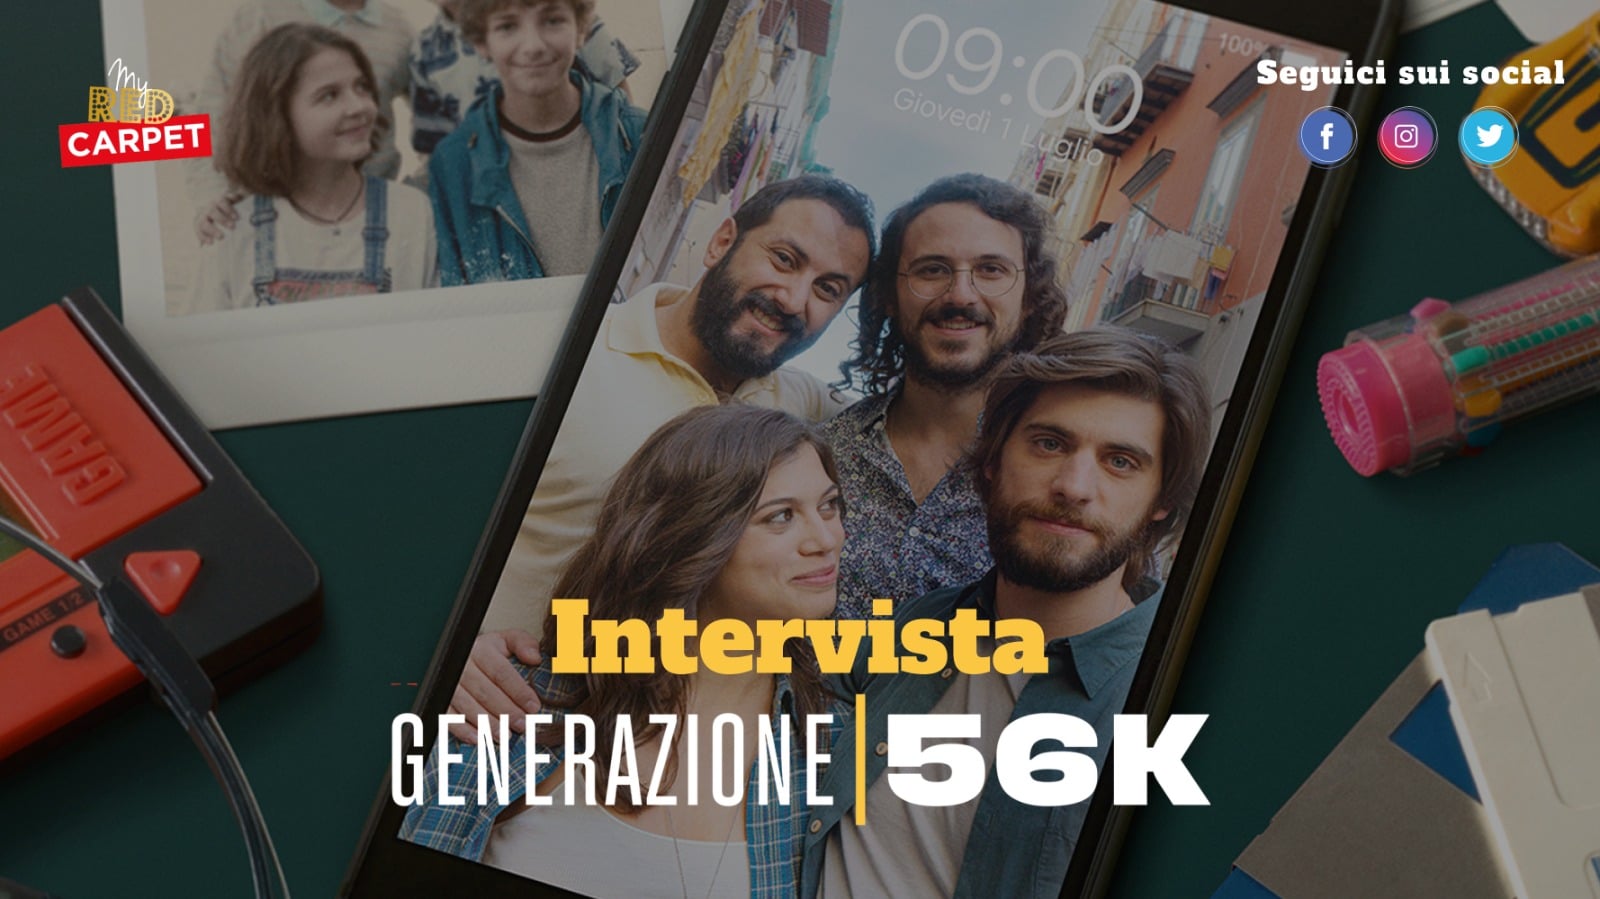 Generazione 56K - Intervista ai protagonisti Angelo Spagnoletti e Cristina Cappelli